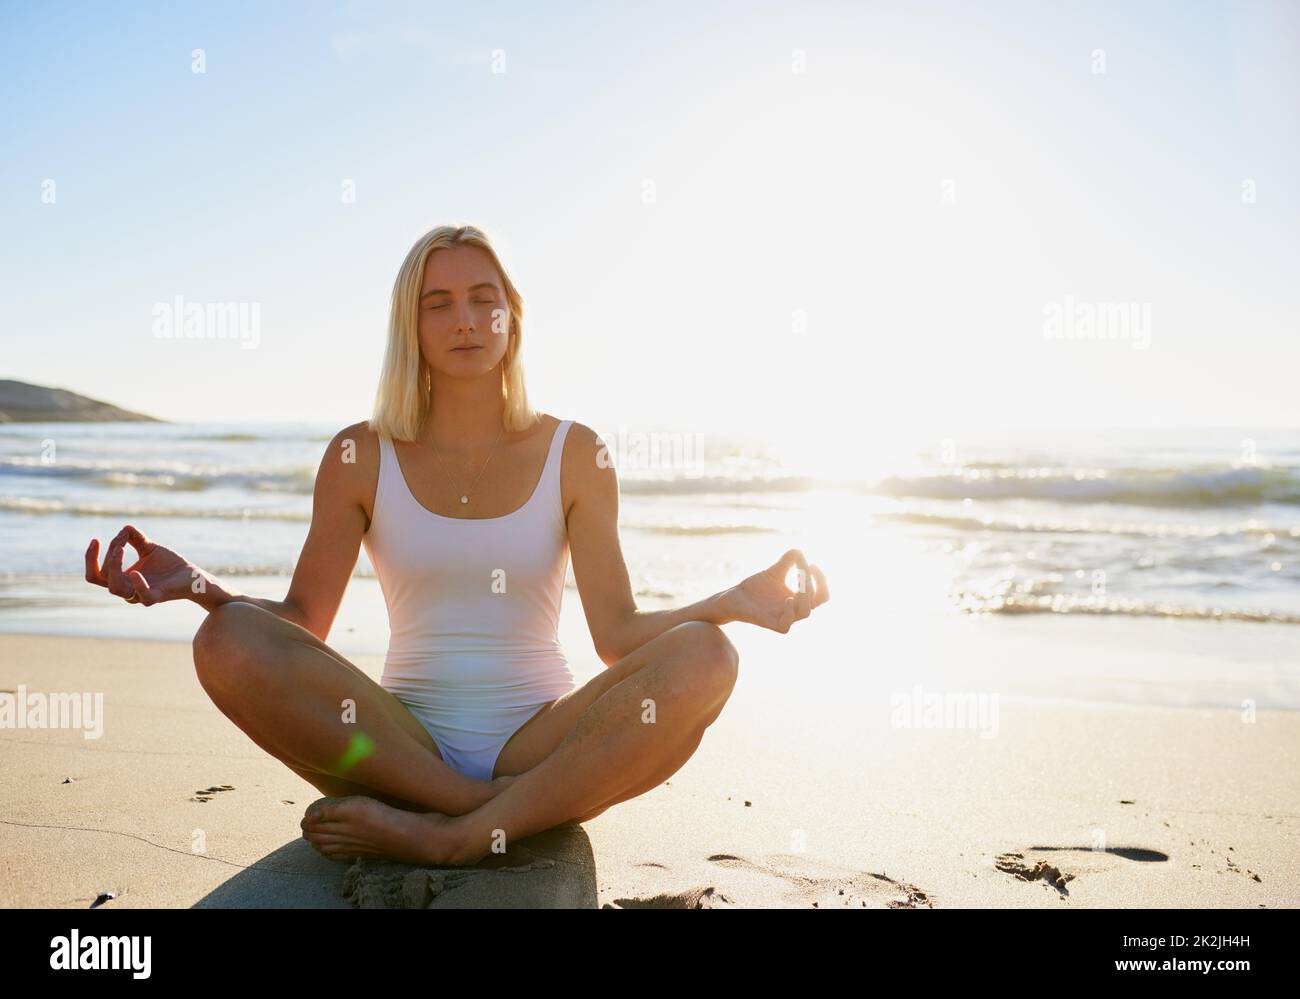 Namaste genau hier. Ganzkörperaufnahme einer attraktiven jungen Frau, die mit gekreuzten Beinen am Strand sitzt und meditiert. Stockfoto